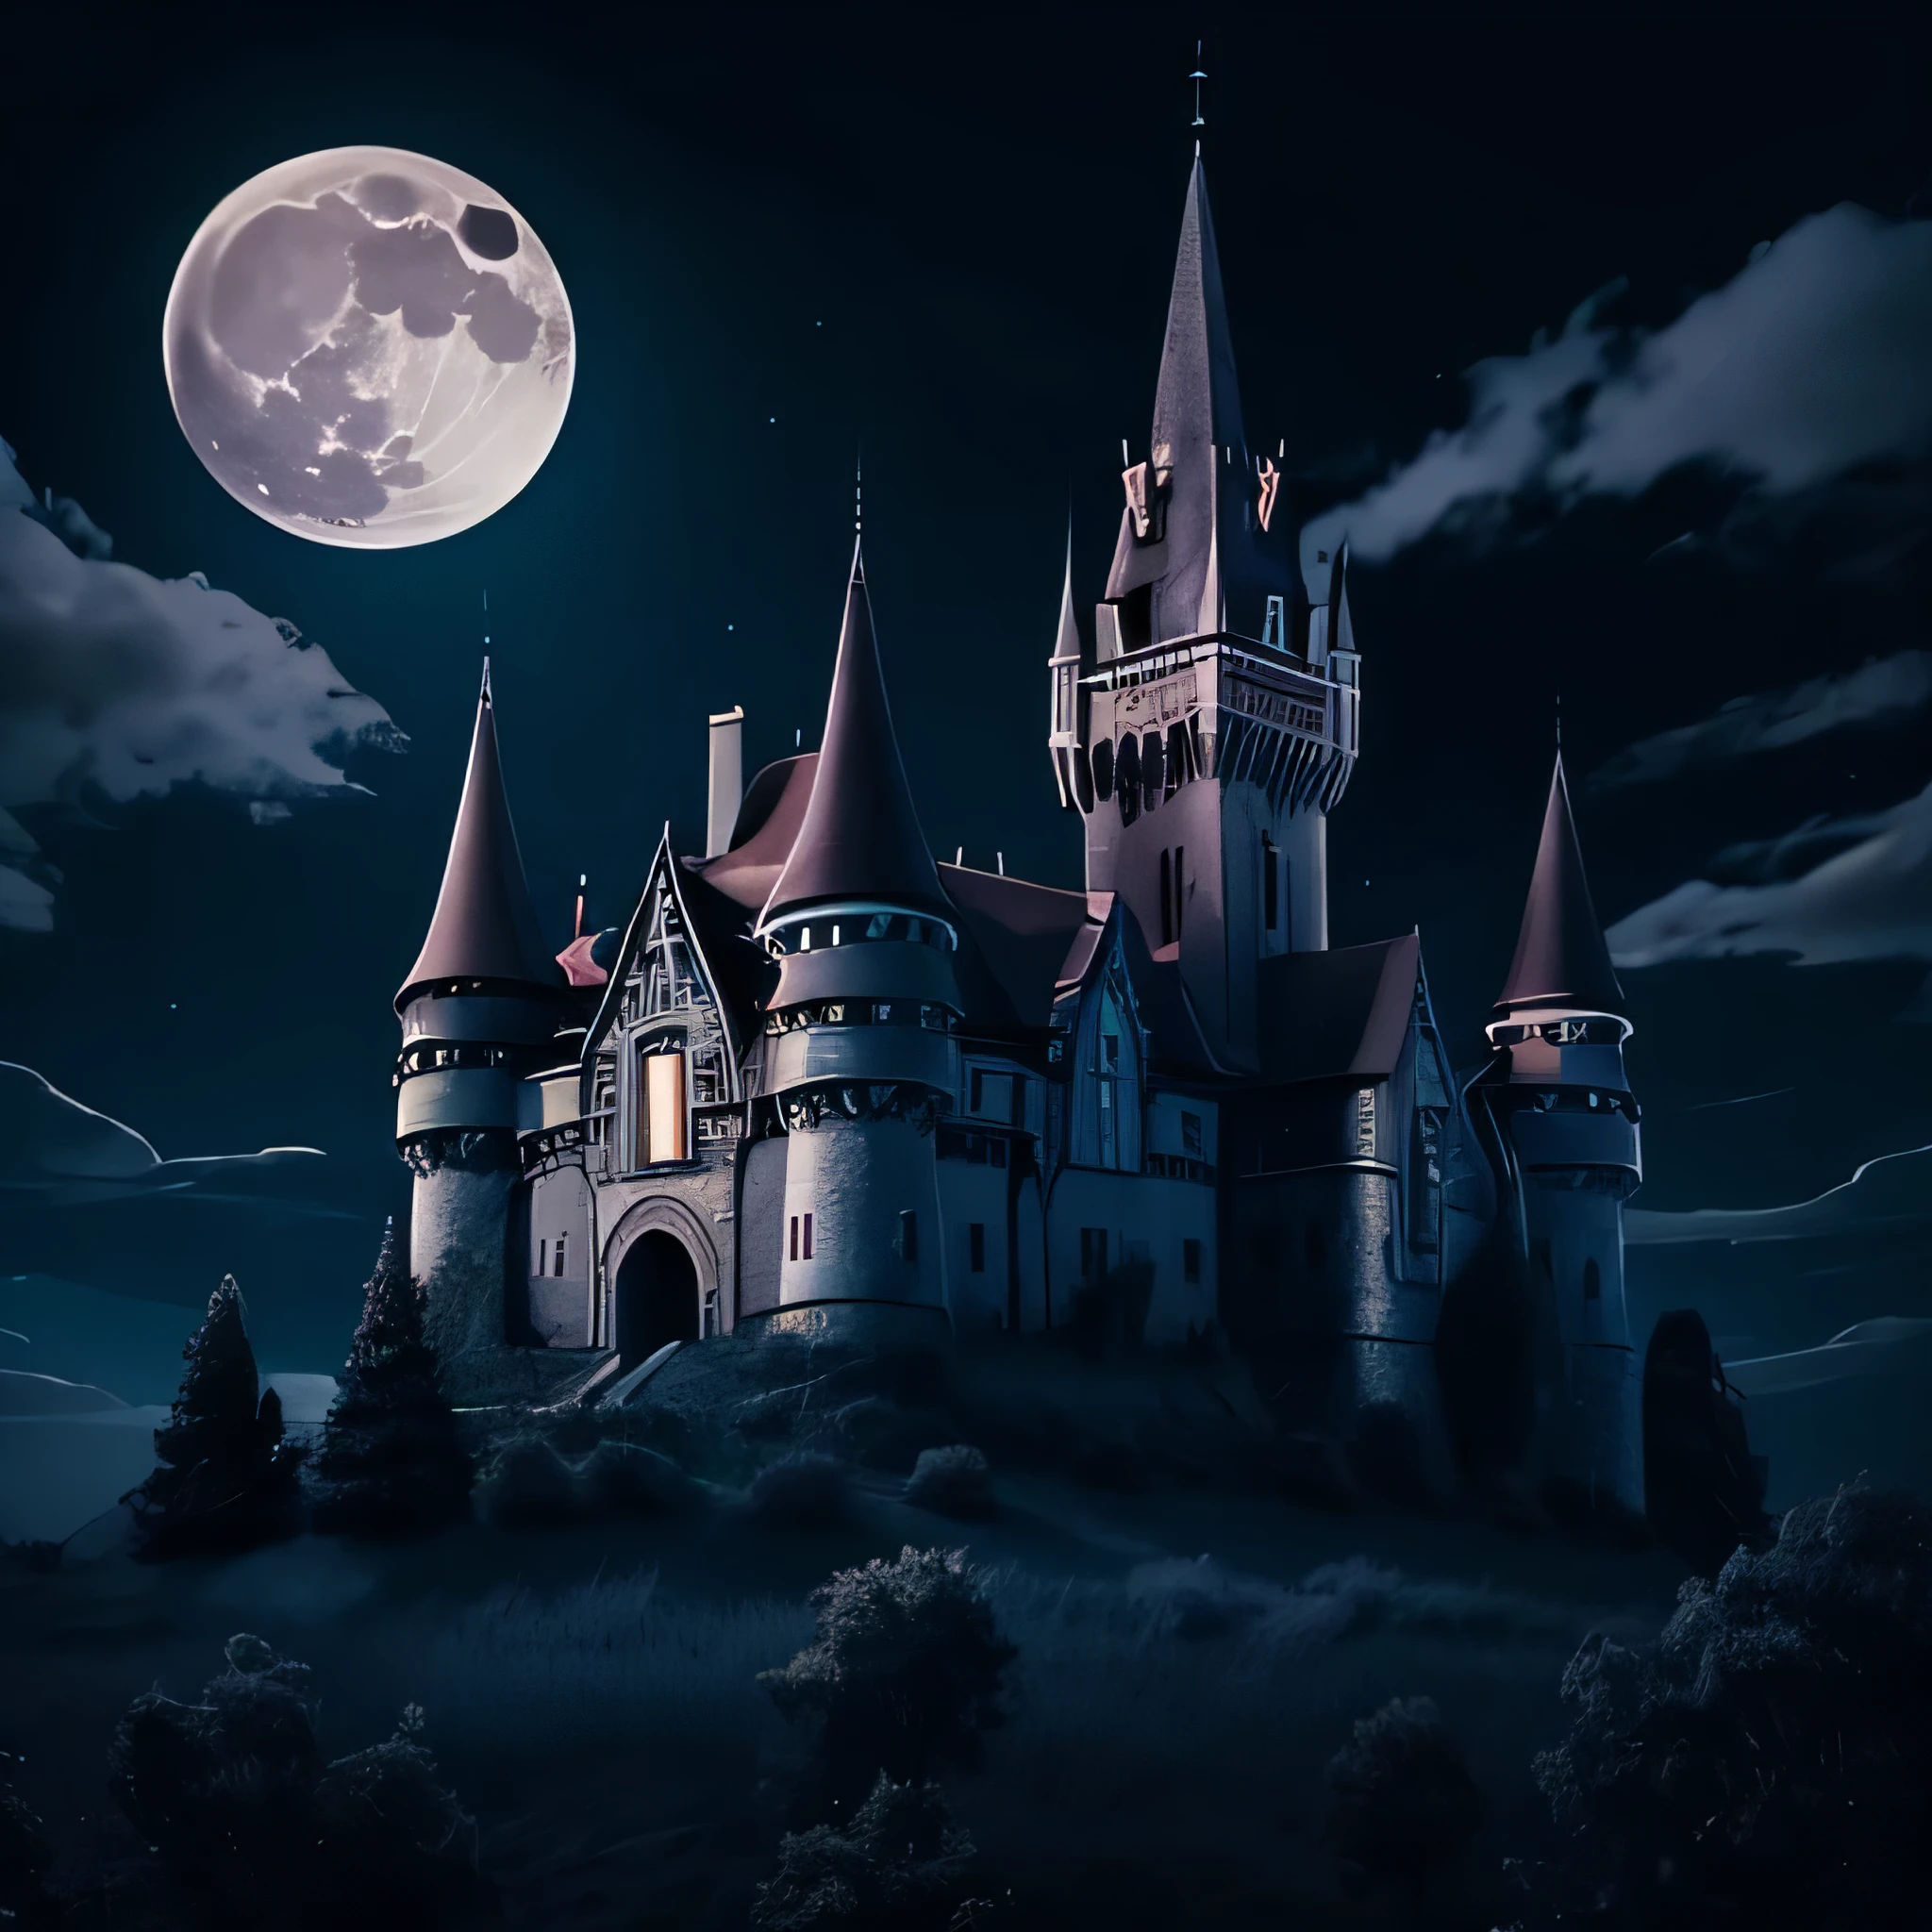 قلعة مصاصي الدماء القديمة في ليلة اكتمال القمر وبعض السحب تبدو مخيفة للغاية